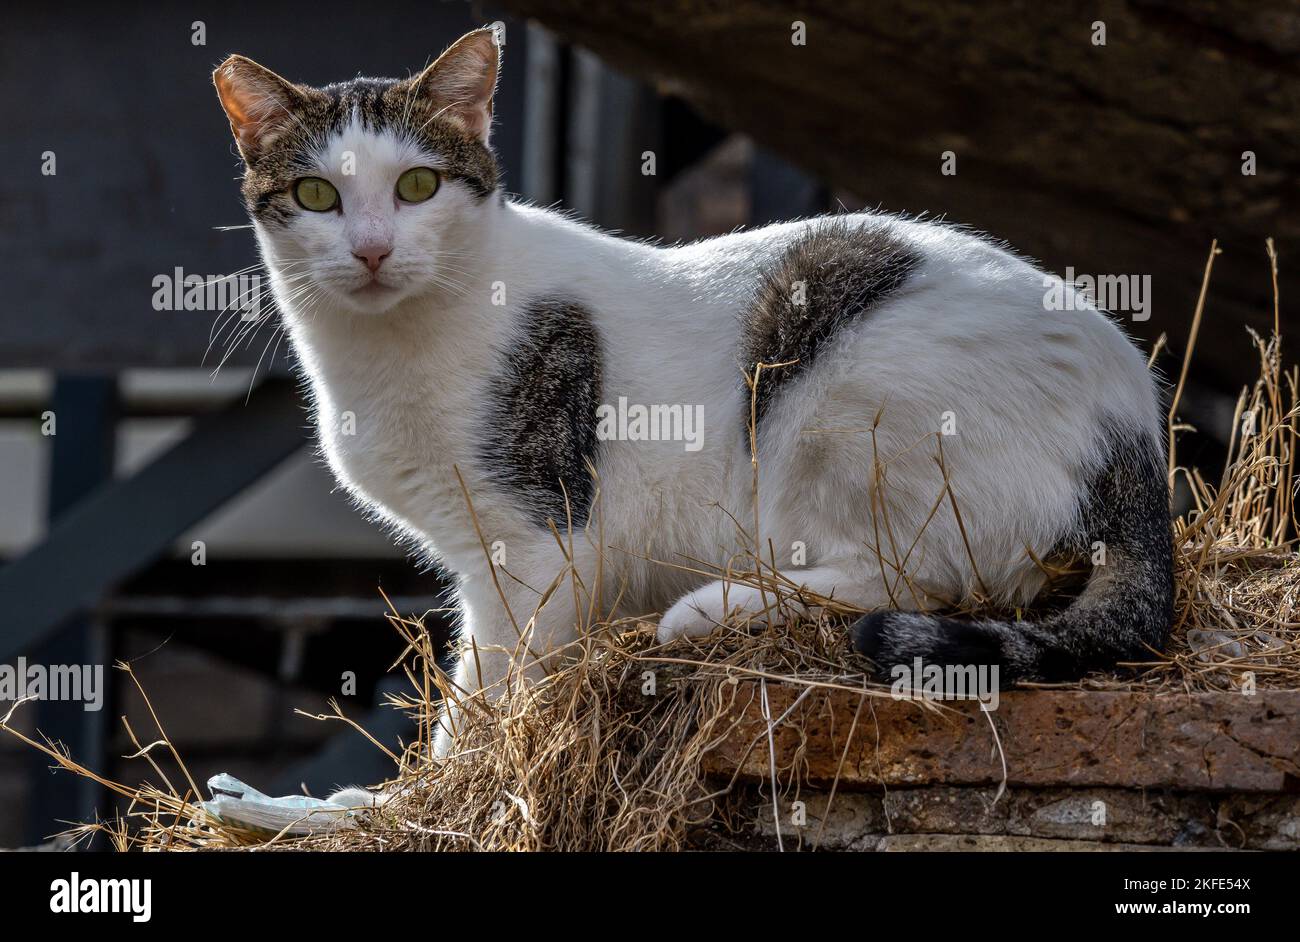 Eine niedliche flauschige gepunktete Katze, die auf einer Treppe sitzt und  die Kamera anschaut Stockfotografie - Alamy